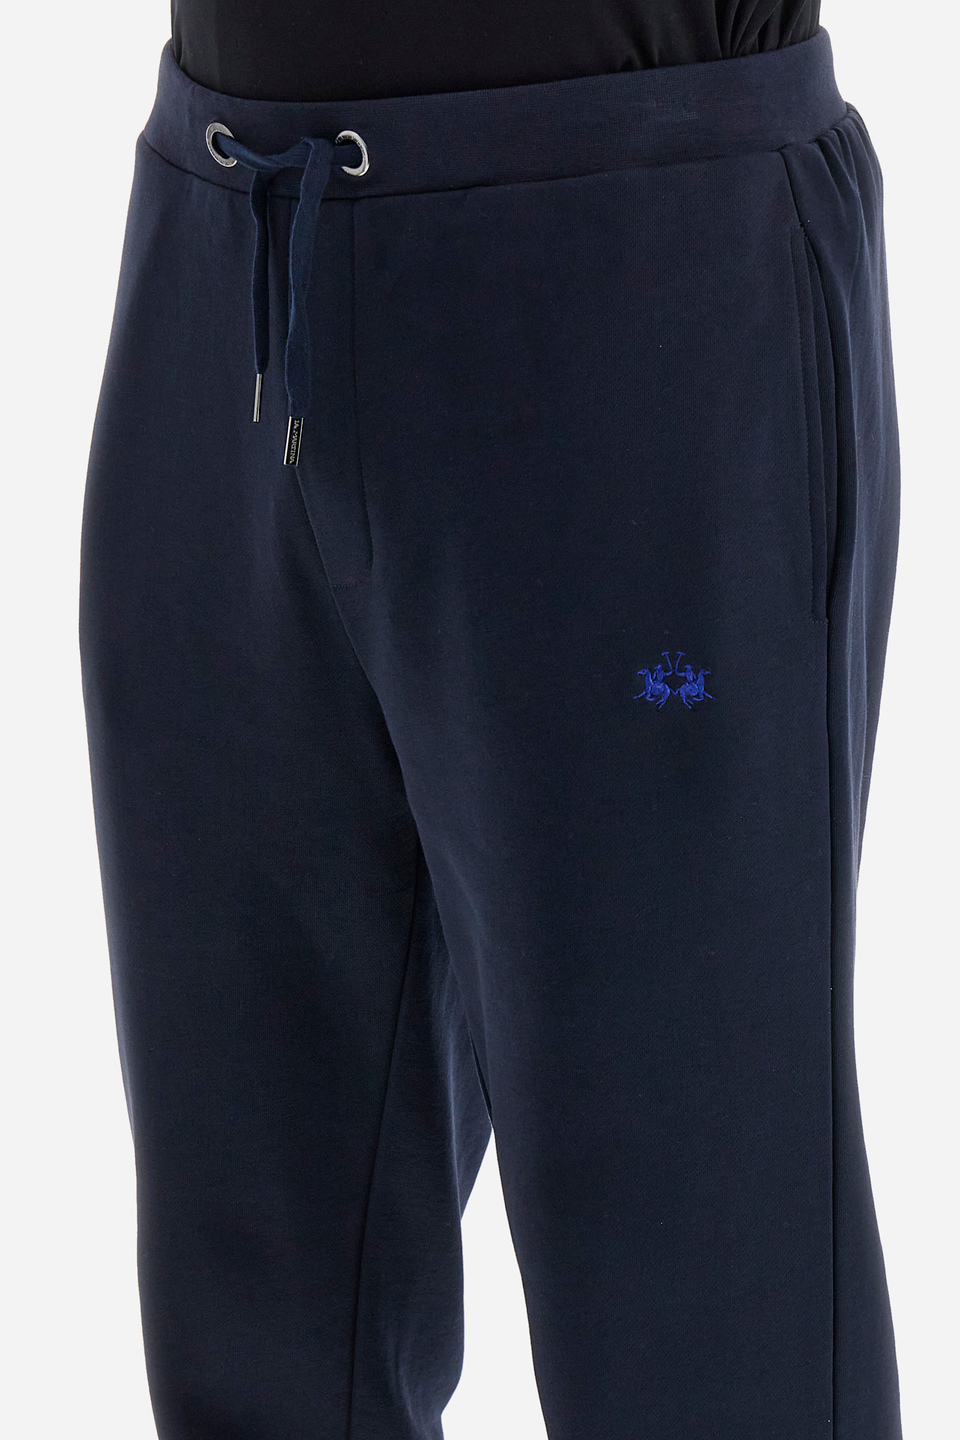 Pantalon de jogging homme coupe classique - Welton | La Martina - Official Online Shop